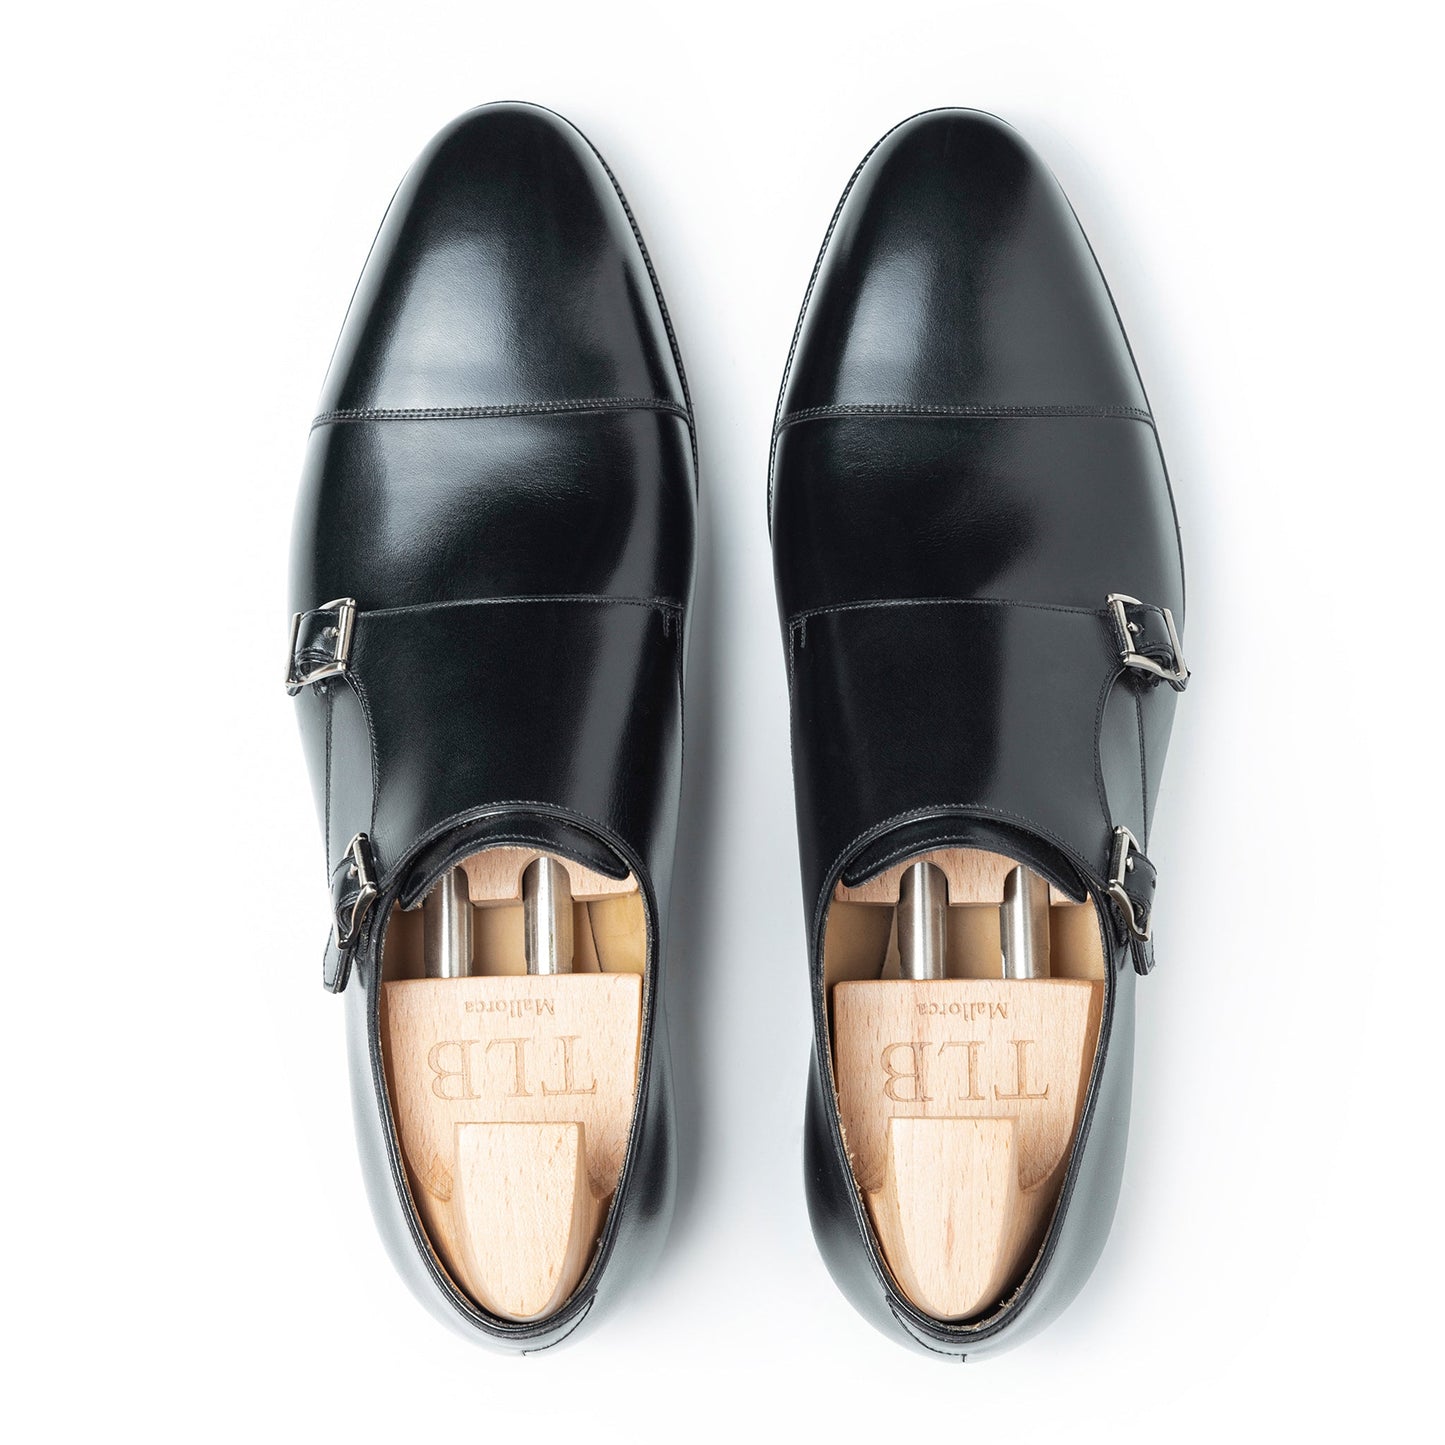 TLB Mallorca leather shoes - Men's monk shoes 